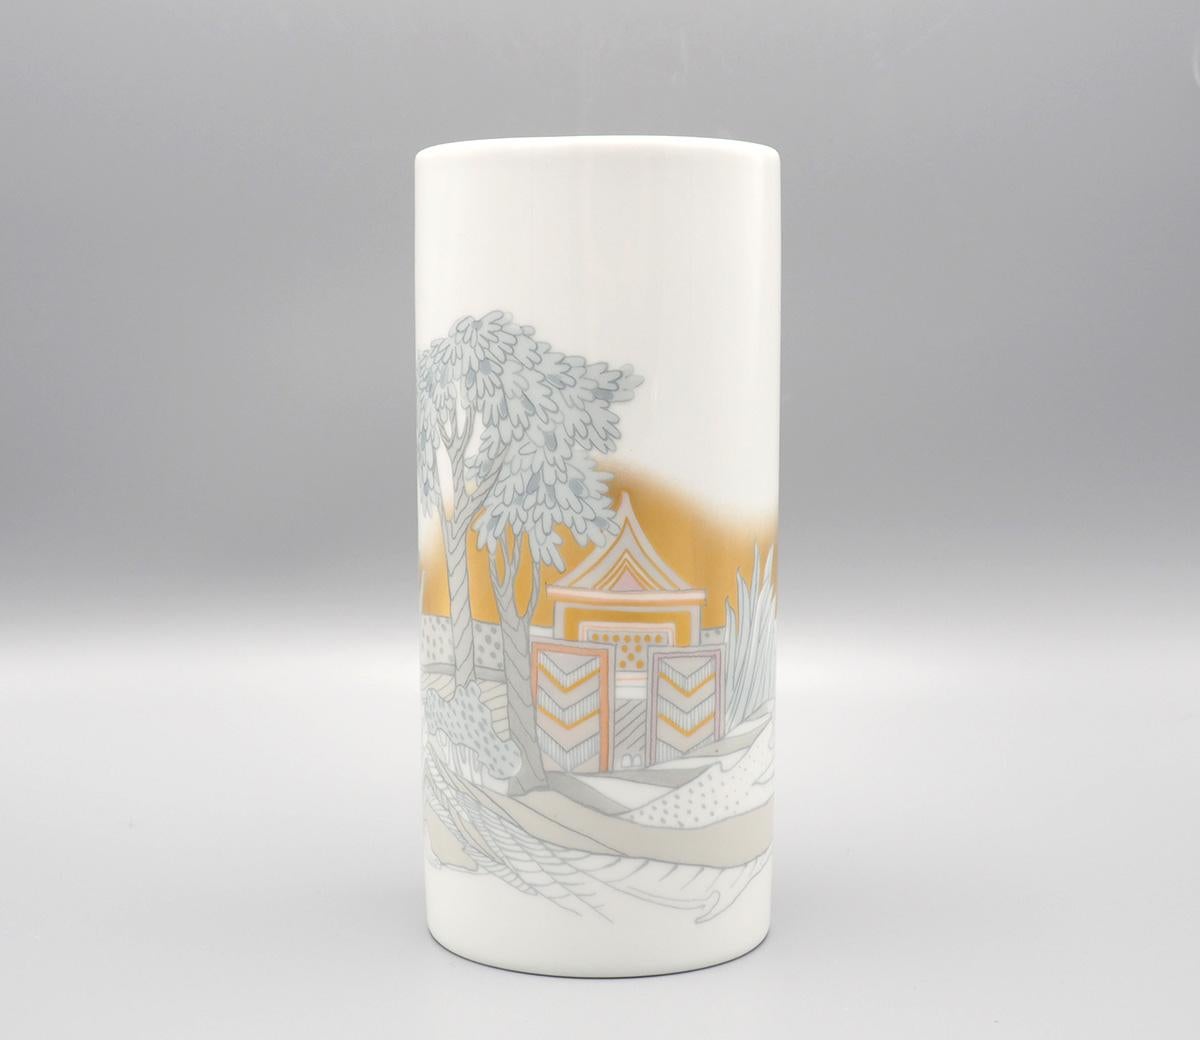 Porzellan Studio Linie (Linie) Kunstvase von Rosenthal Deutschland in den 1970er Jahren hergestellt.

Die zylinderförmige Vase zeigt eine abstrakte Darstellung eines japanischen Gartens mit einem Haus und einem Baum vor einem goldenen